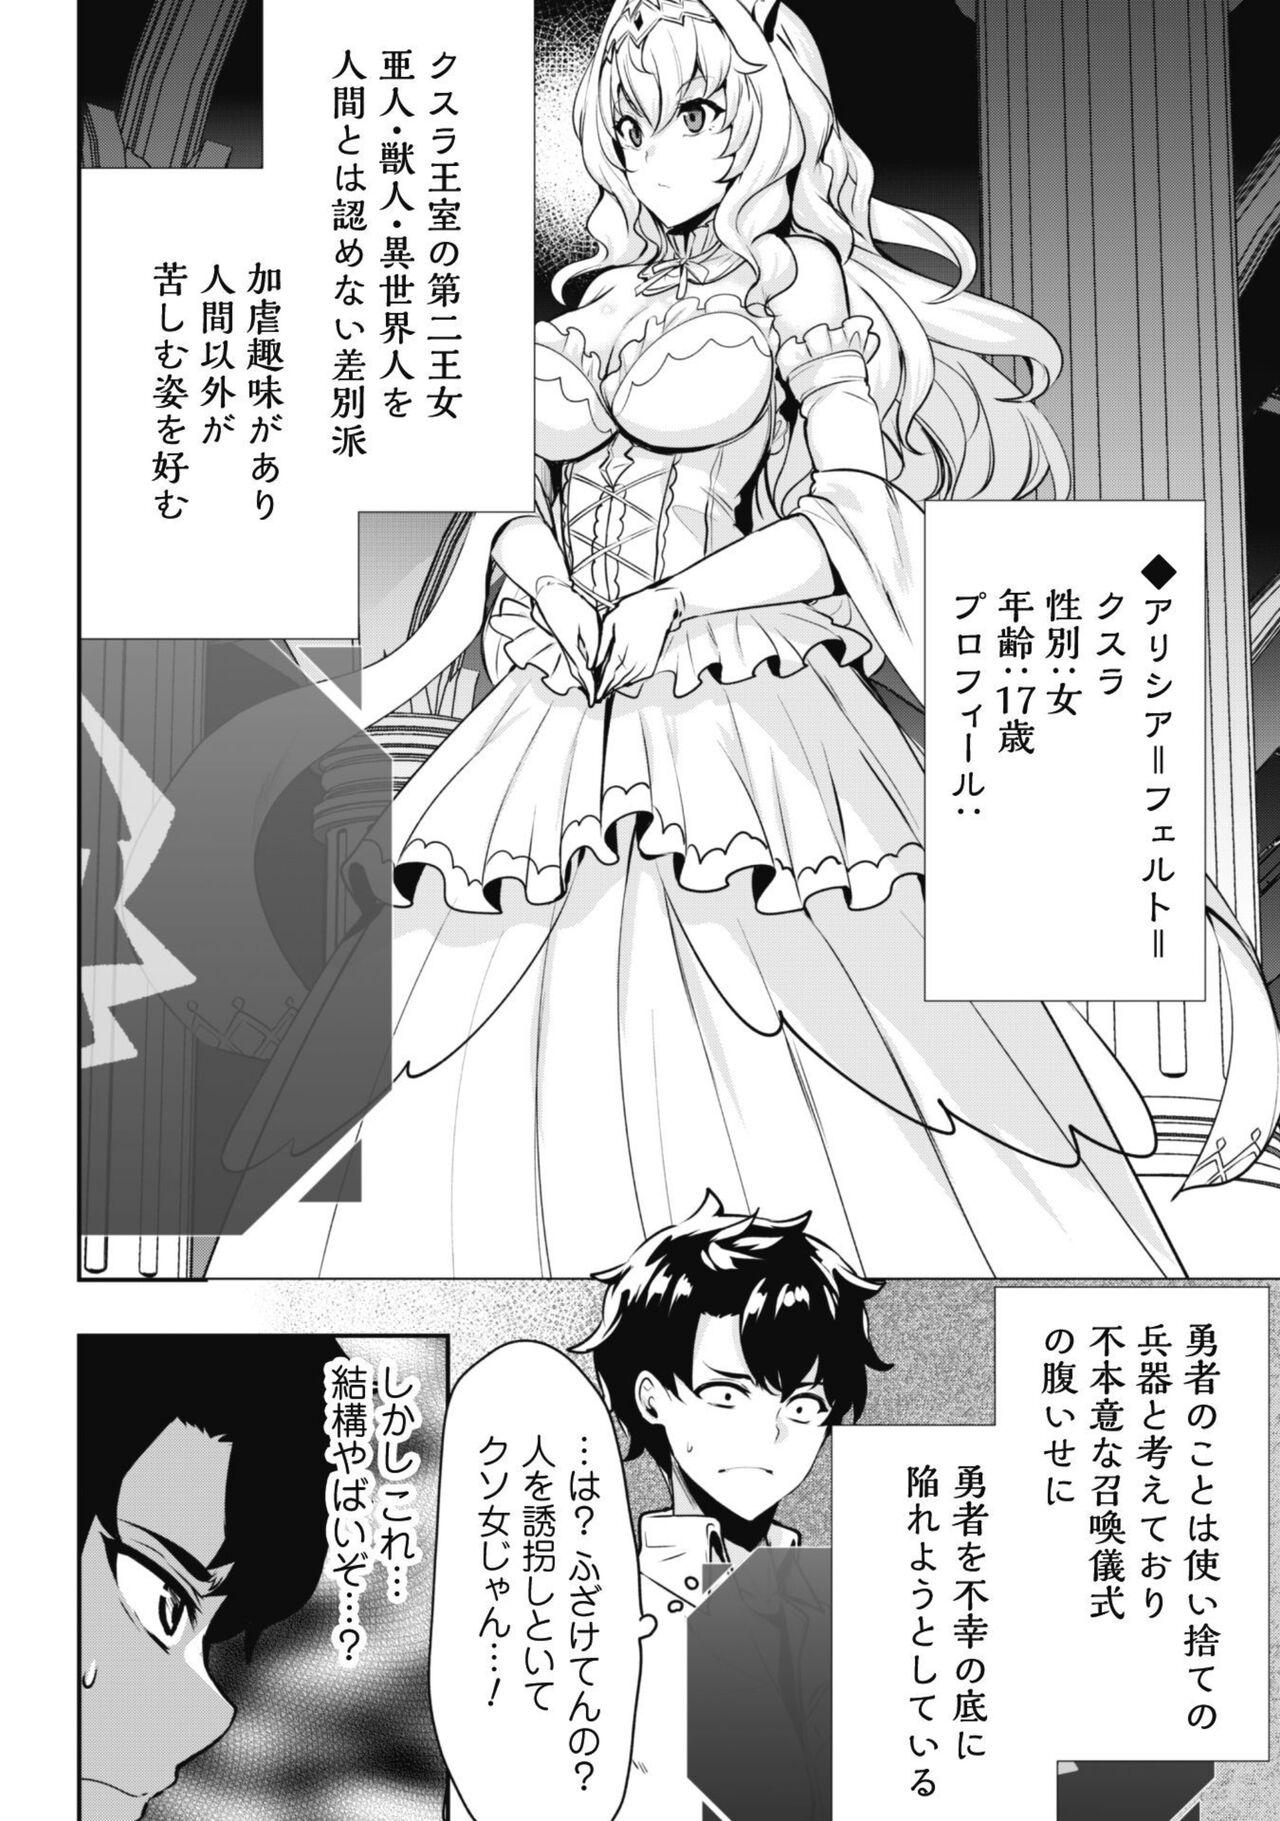 Hotwife Hangyaku no Yūsha 〜 Sukiru o Tsukatte Haraguro ōjo no Kokoro to Karada o Shōaku seyo 〜 1 Monster Dick - Page 9